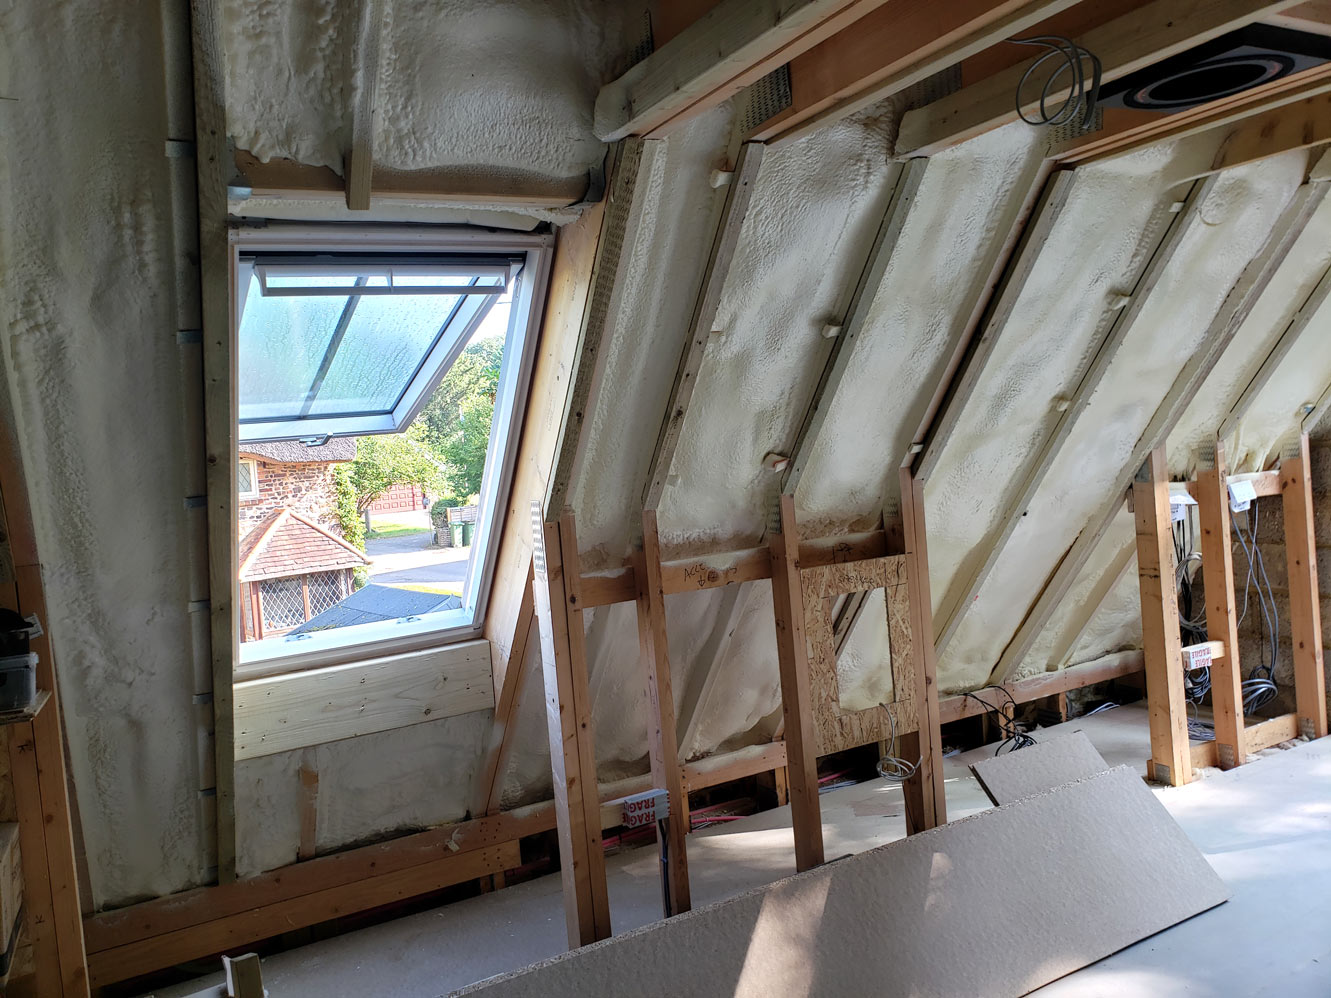 Annexe roof insulation showing foam applied around Velux window